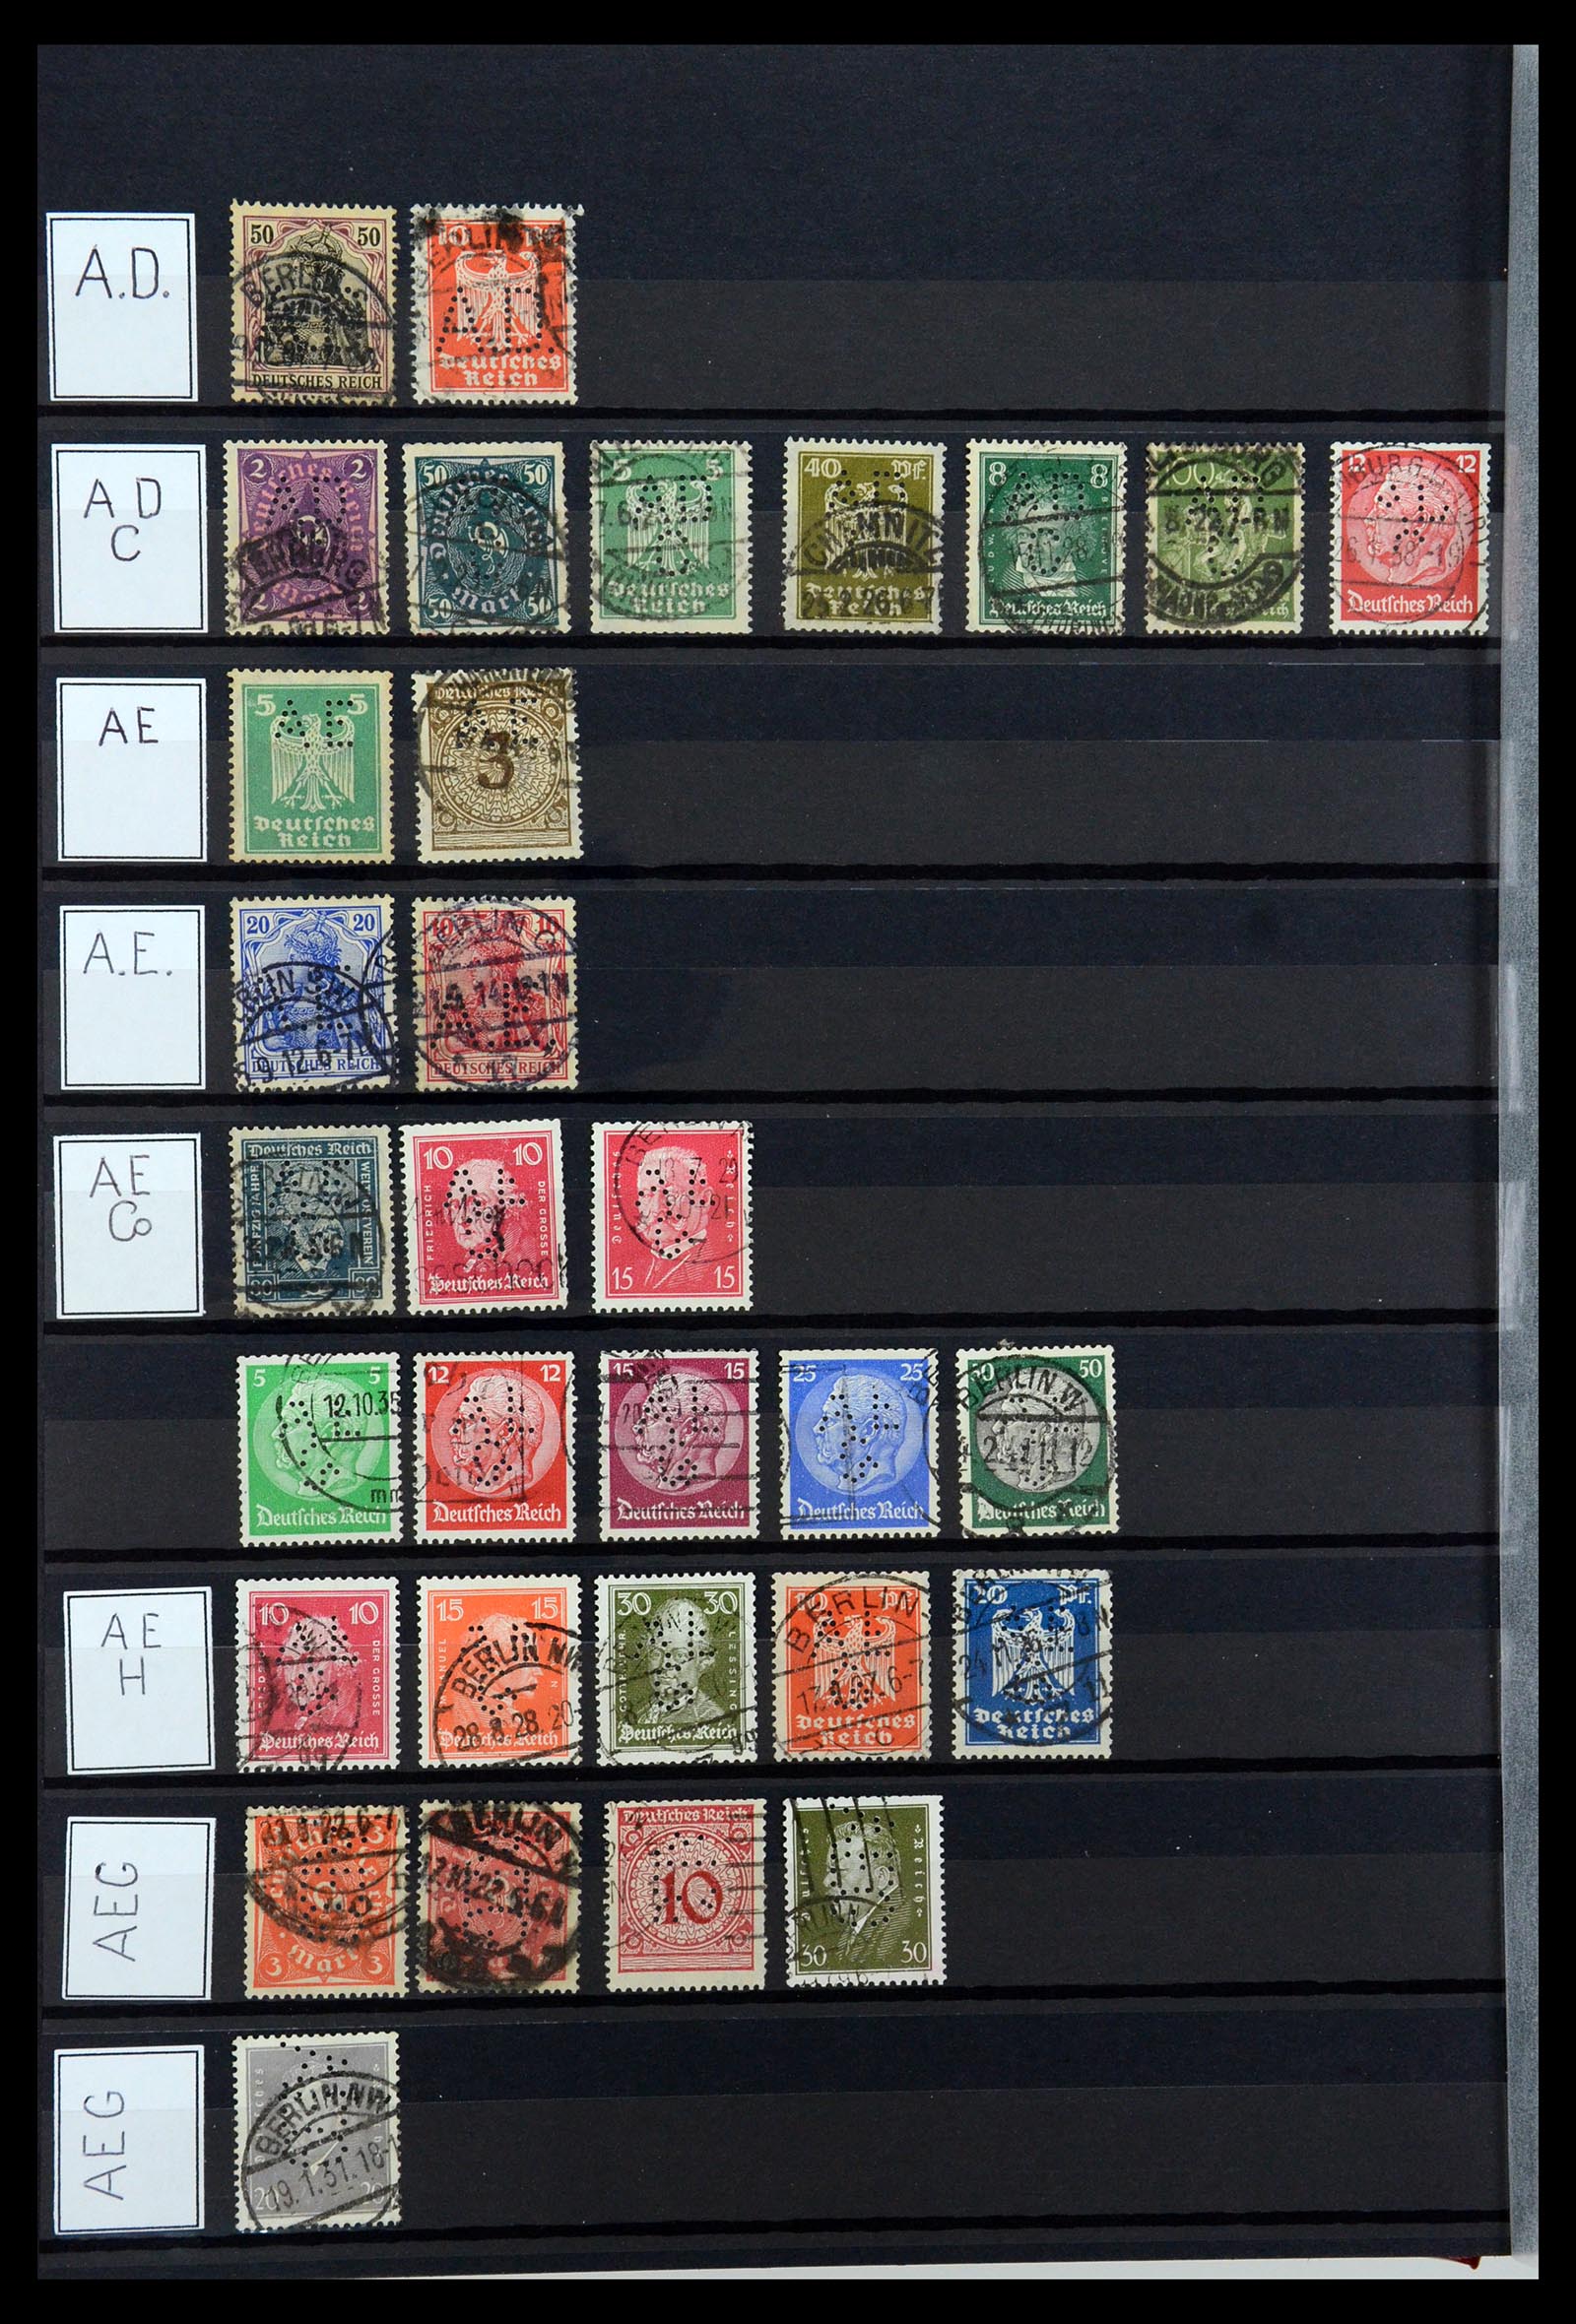 36405 008 - Stamp collection 36405 German Reich perfins 1880-1945.